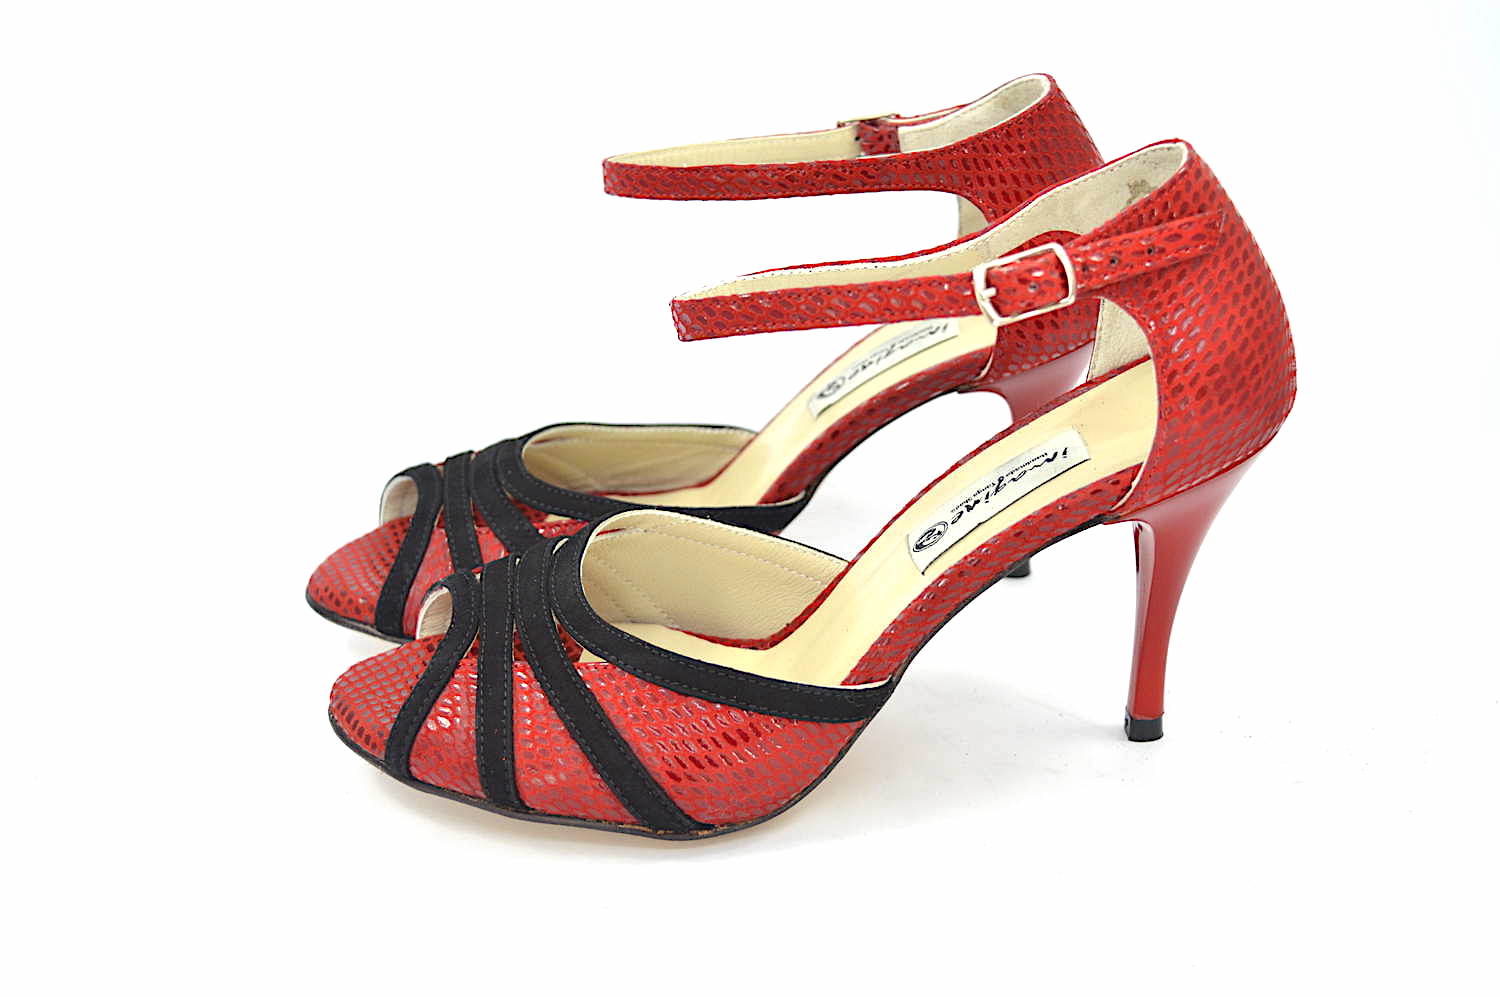 Γυναικείο παπούτσι tango peep toe από εντυπωσιακό κόκκινο φίδι και μαύρο σουετ δέρμα